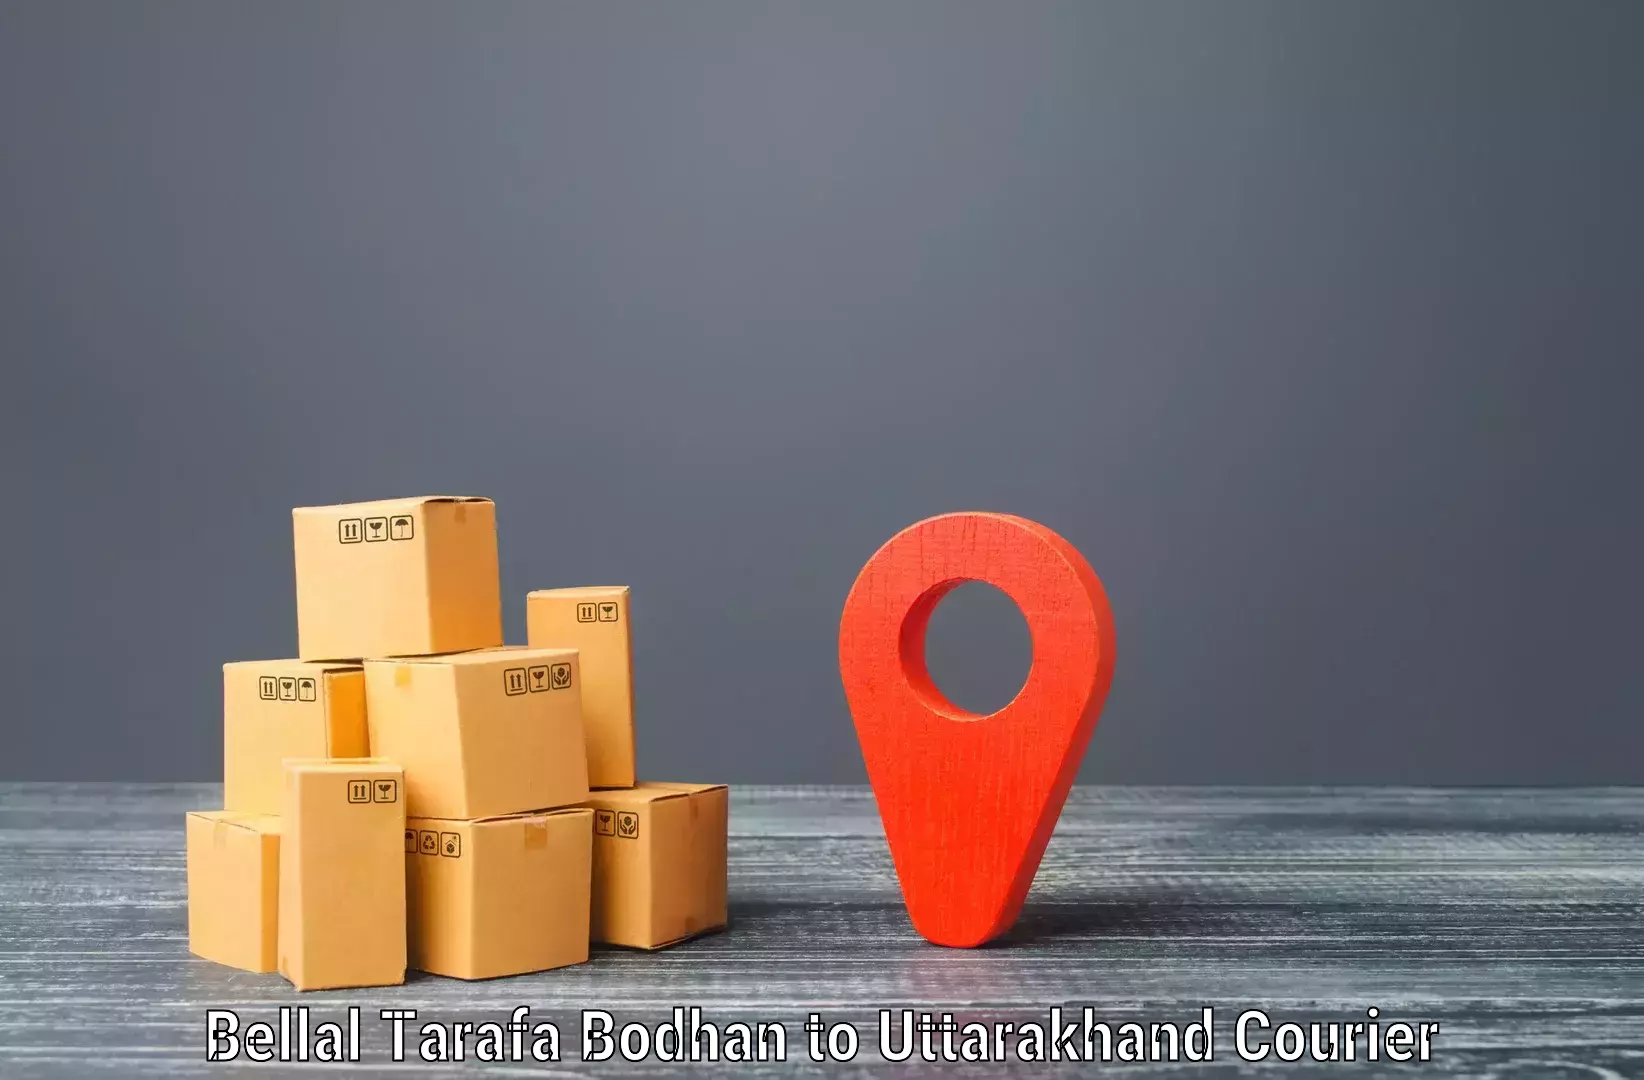 Efficient cargo services Bellal Tarafa Bodhan to Baijnath Bageshwar